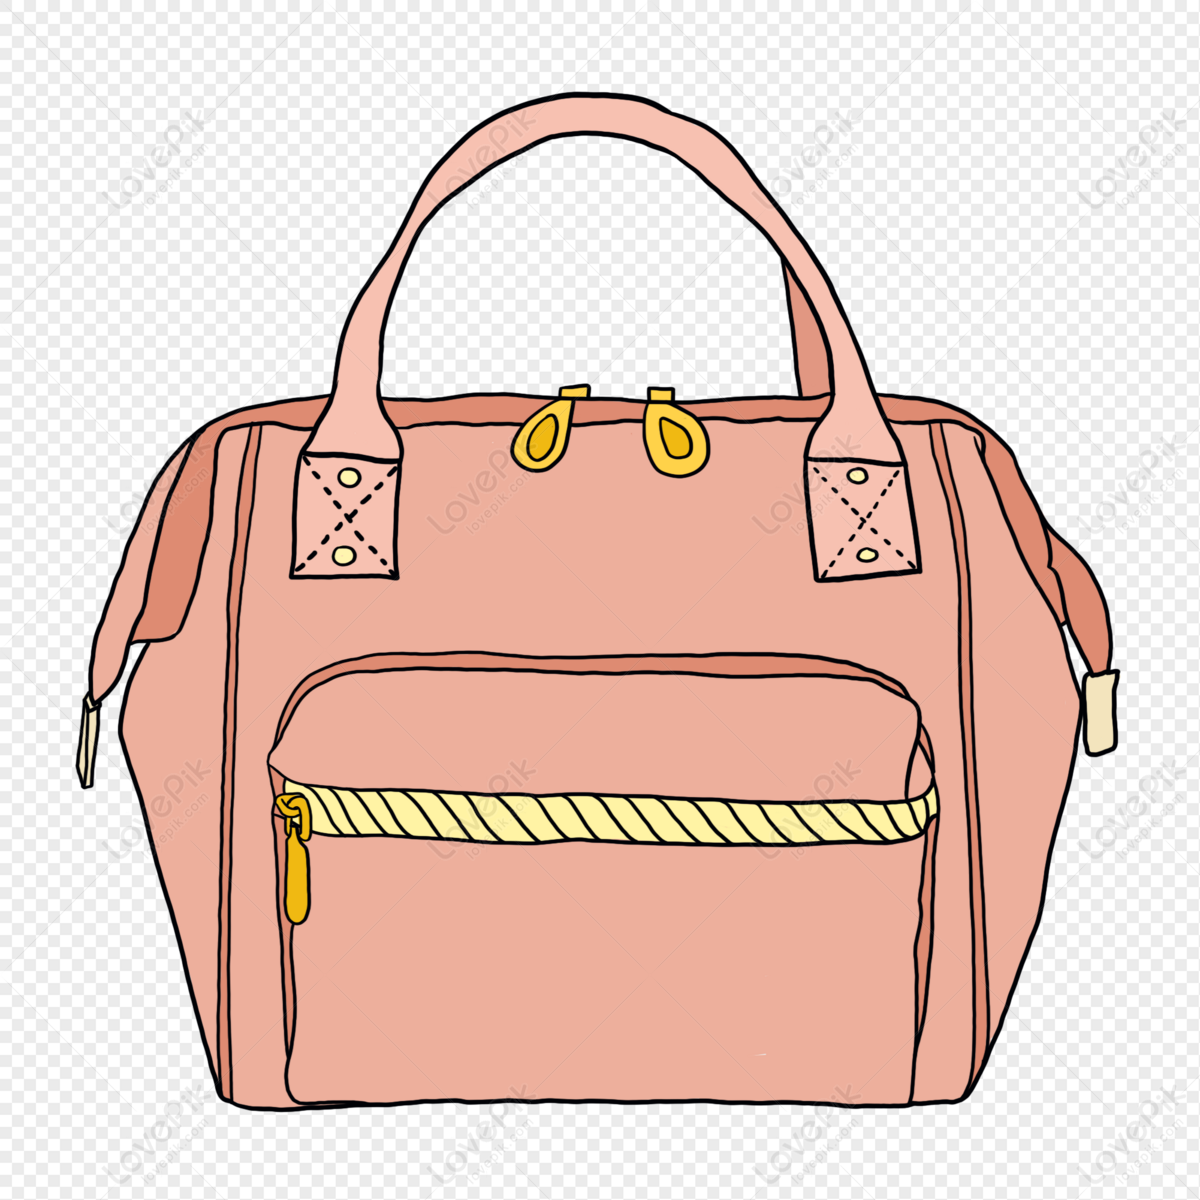 lovepik pink handbag png image 401552616 wh1200